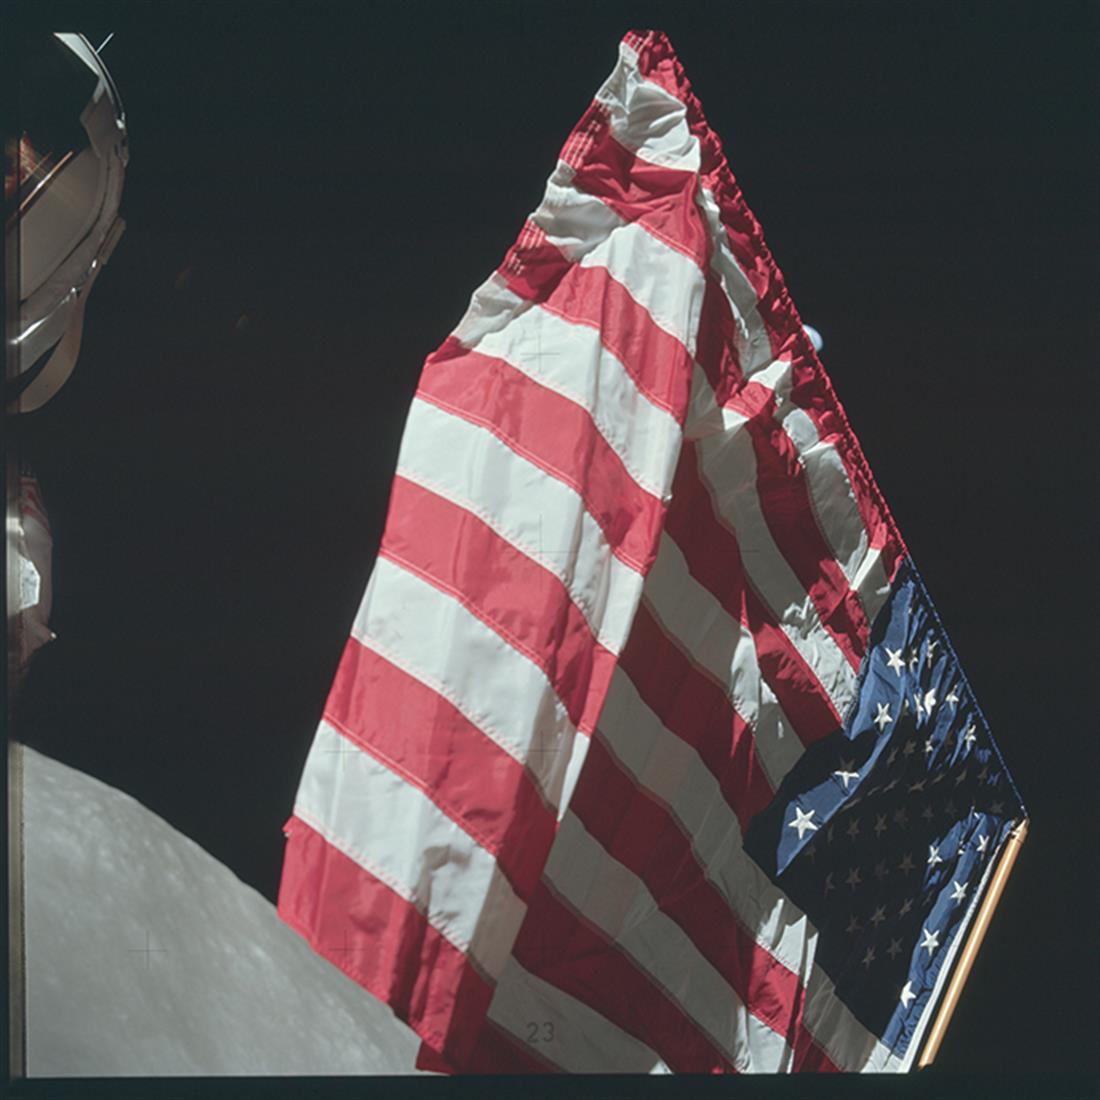 ΝΑΣΑ - Αποστολή - Απόλλων 11 - φεγγάρι - αρχείο - Νιλ Άρμστρονγκ